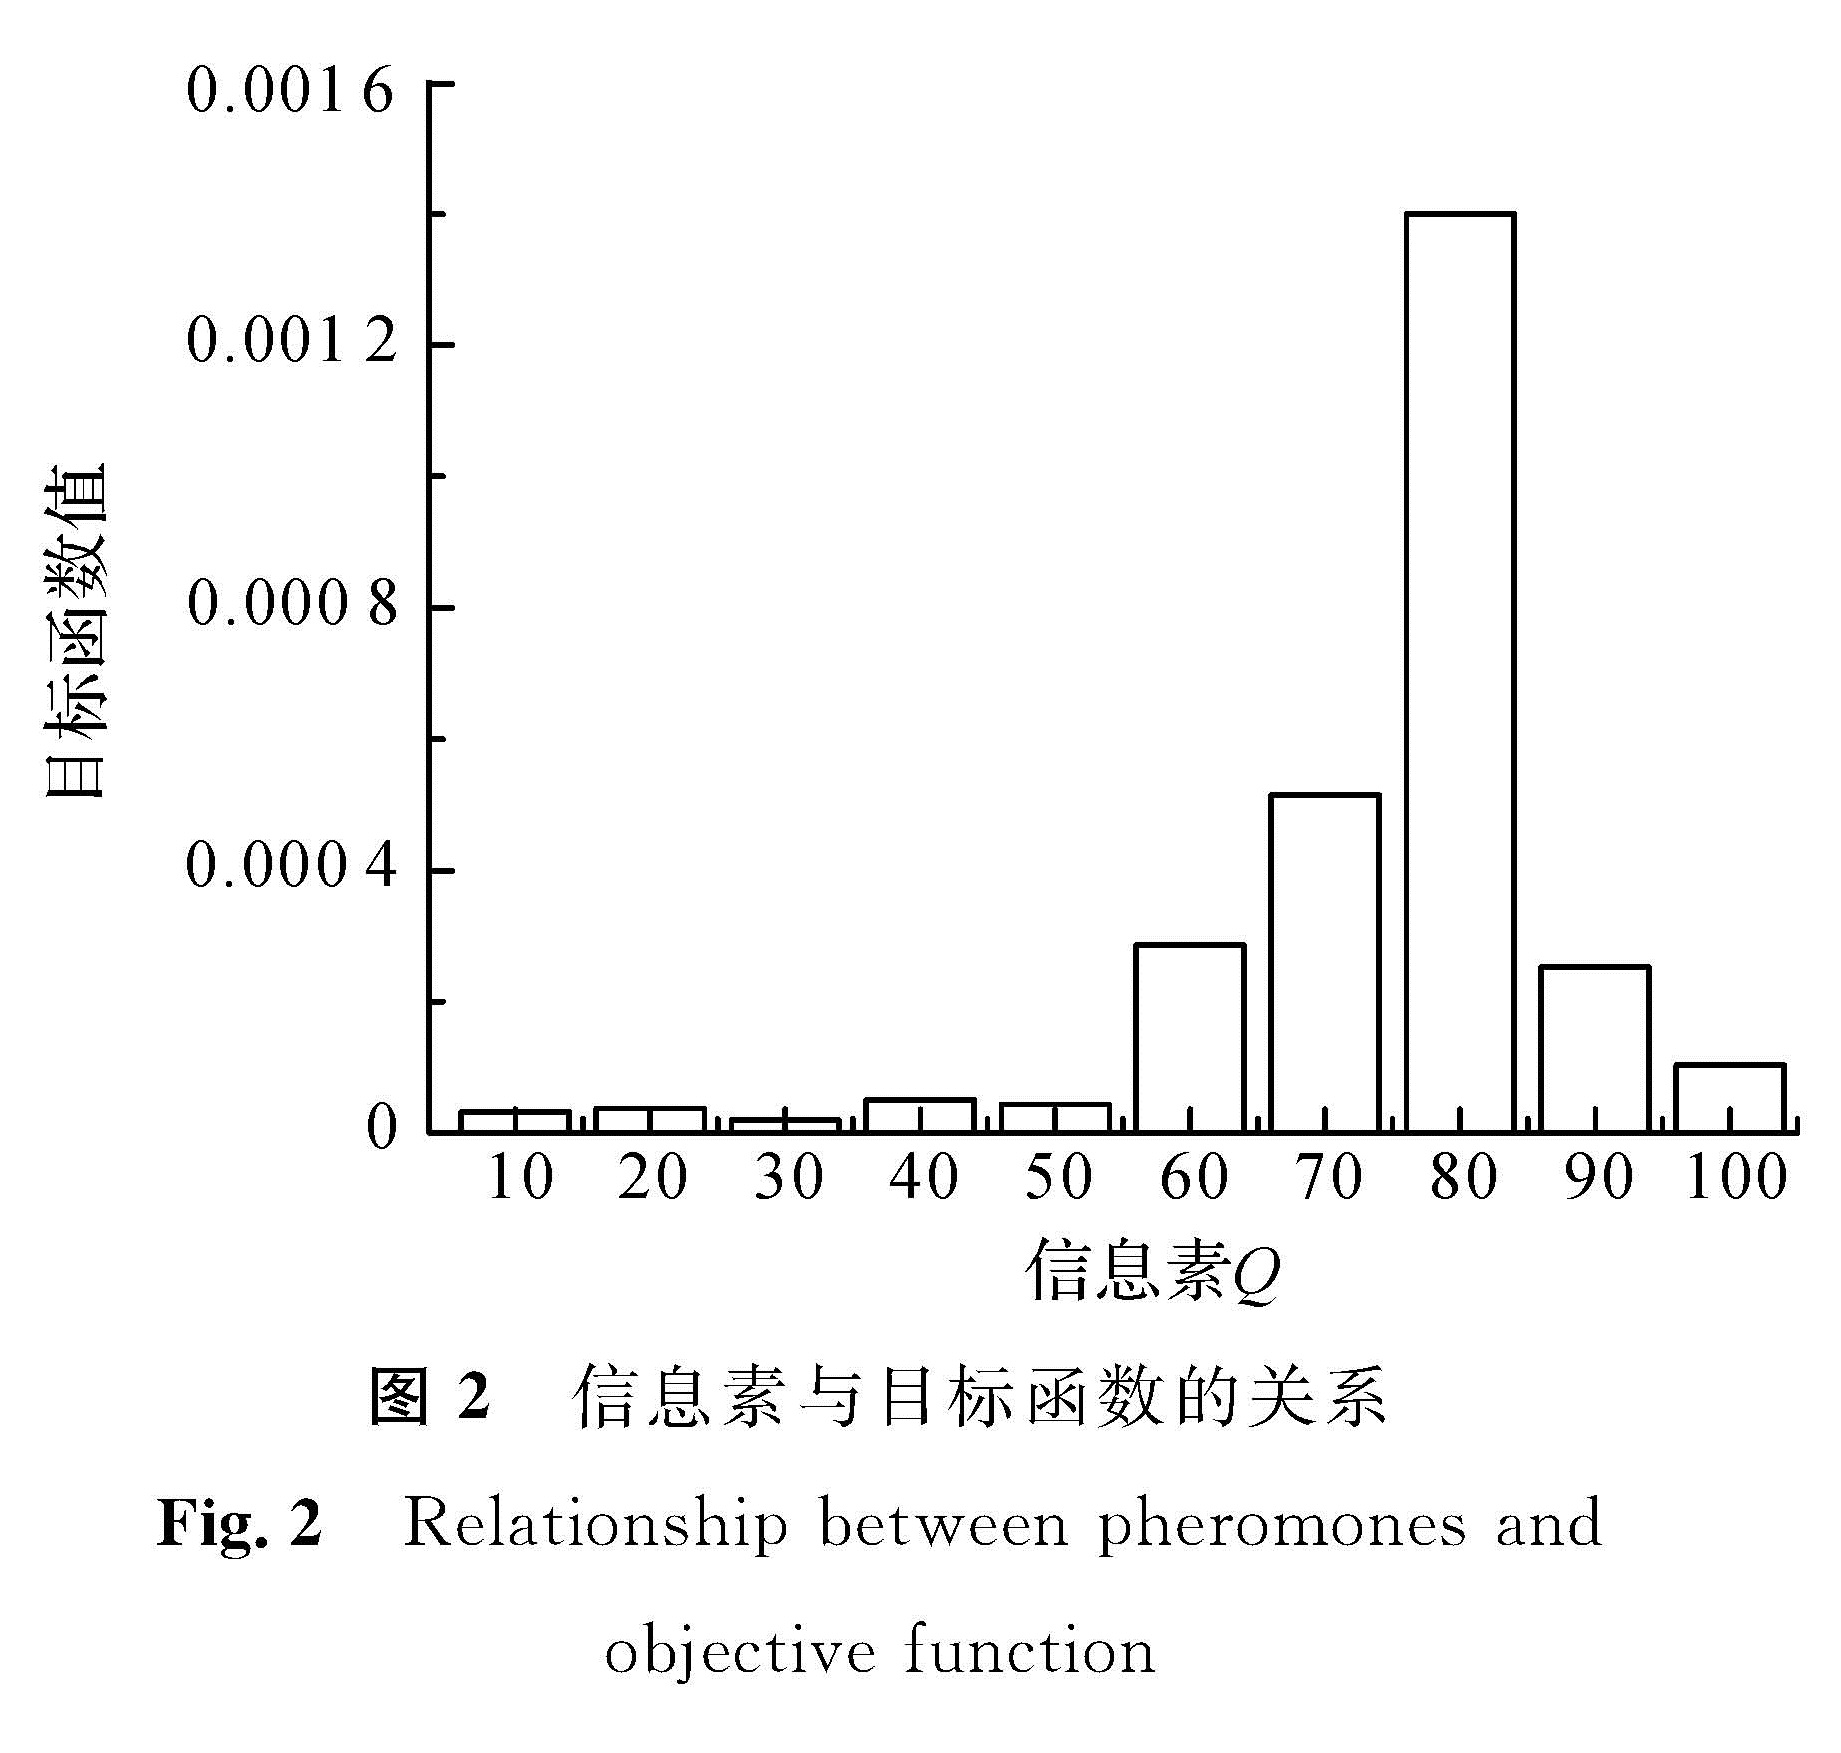 图2 信息素与目标函数的关系<br/>Fig.2 Relationship between pheromones and objective function